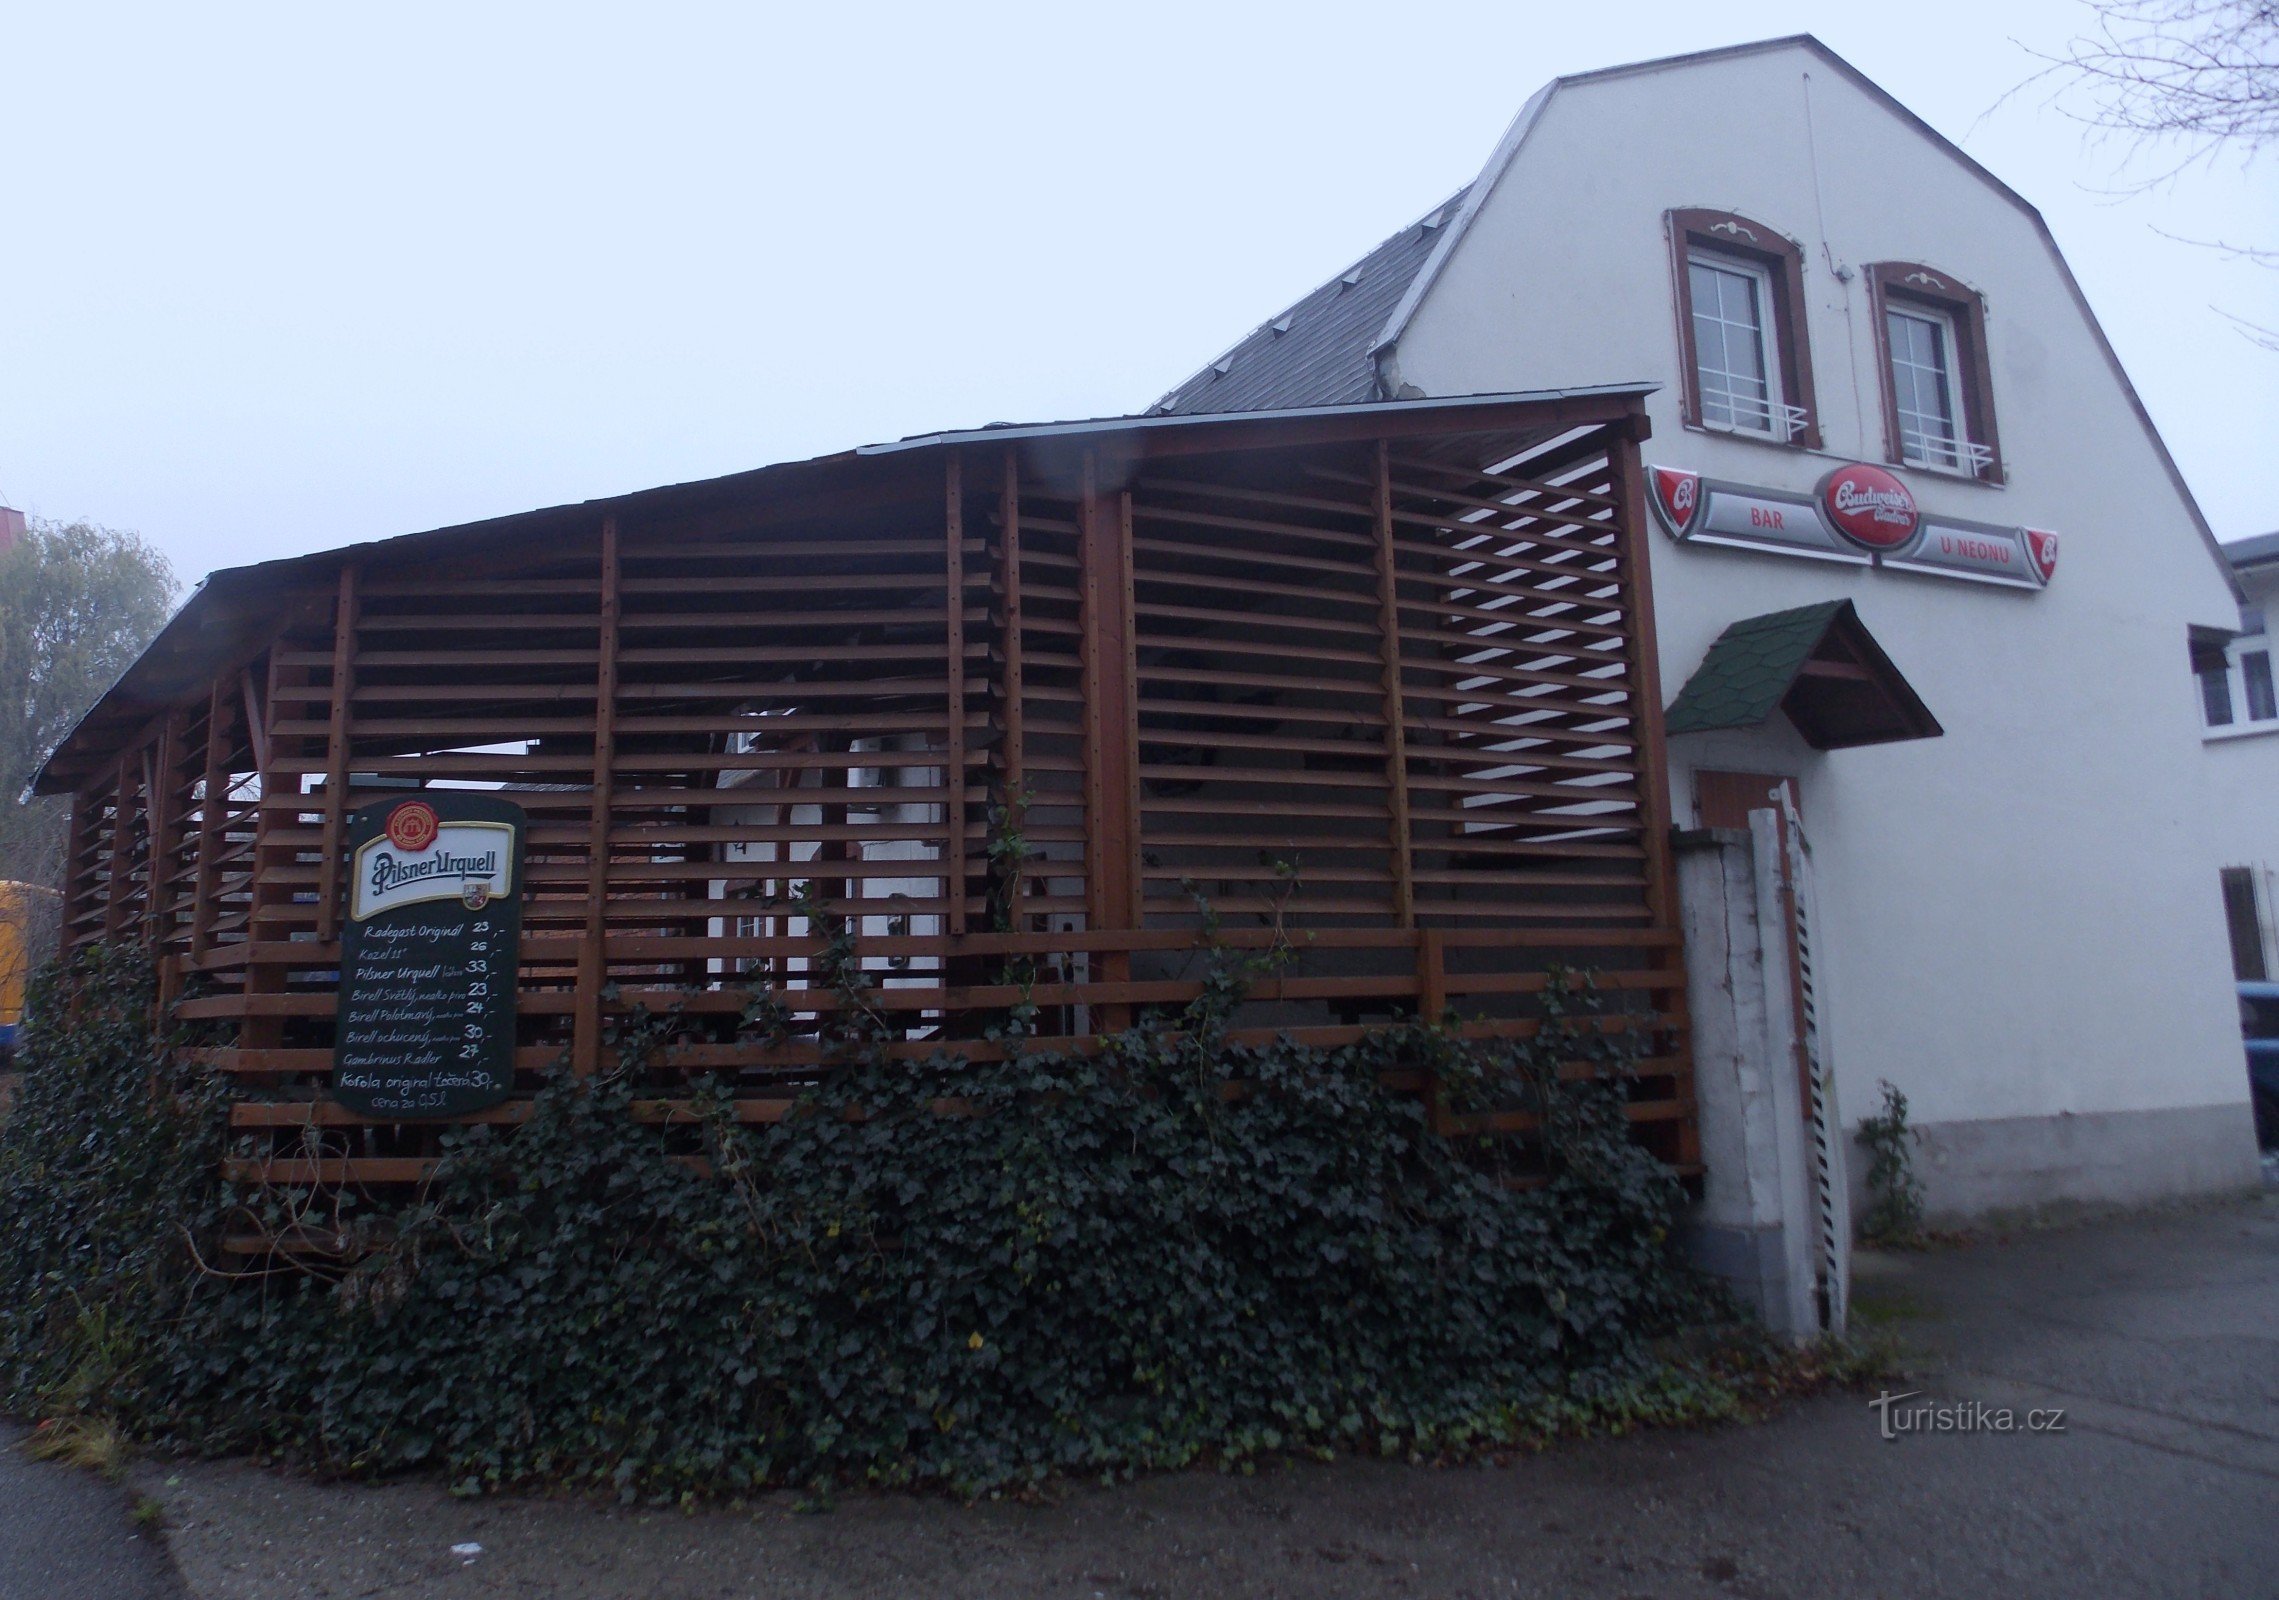 Restoran U Neonu u Malenovicama u regiji Zlín